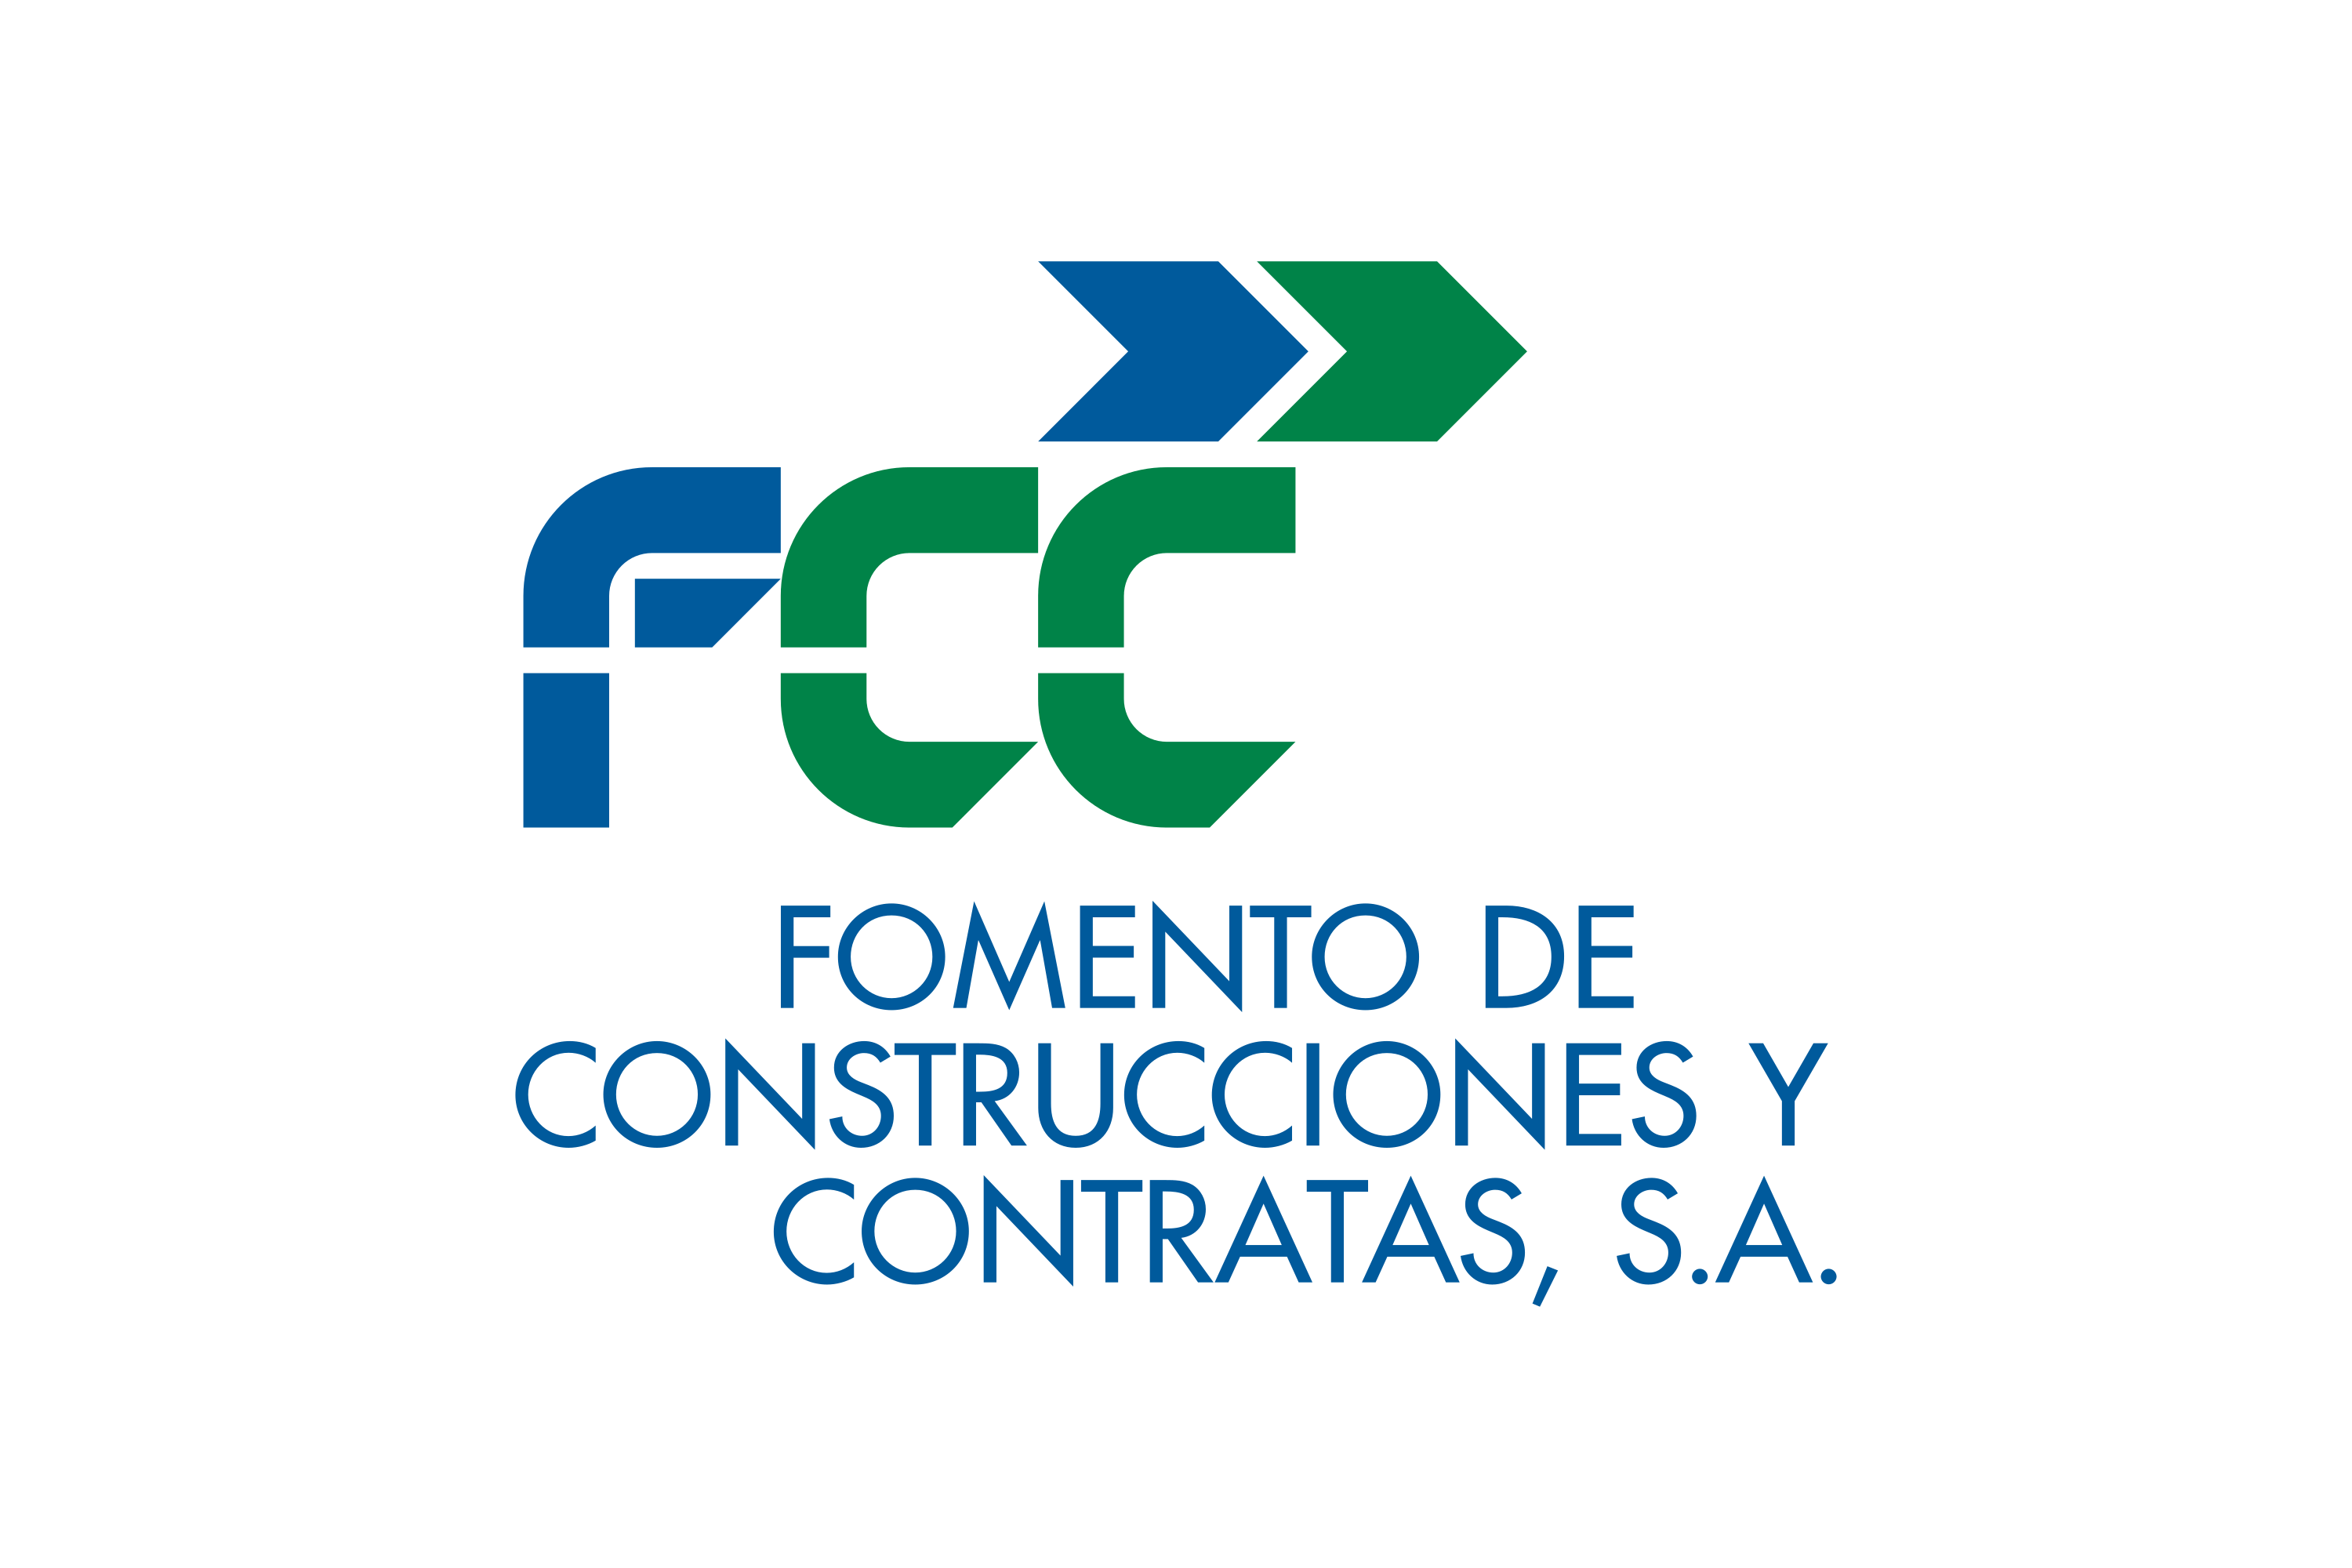 Clientes Holding Compresores de aire - Download Fomento de Construcciones y Contratas (FCC) Logo in SVG Vector or  PNG File Format - Logo.wine